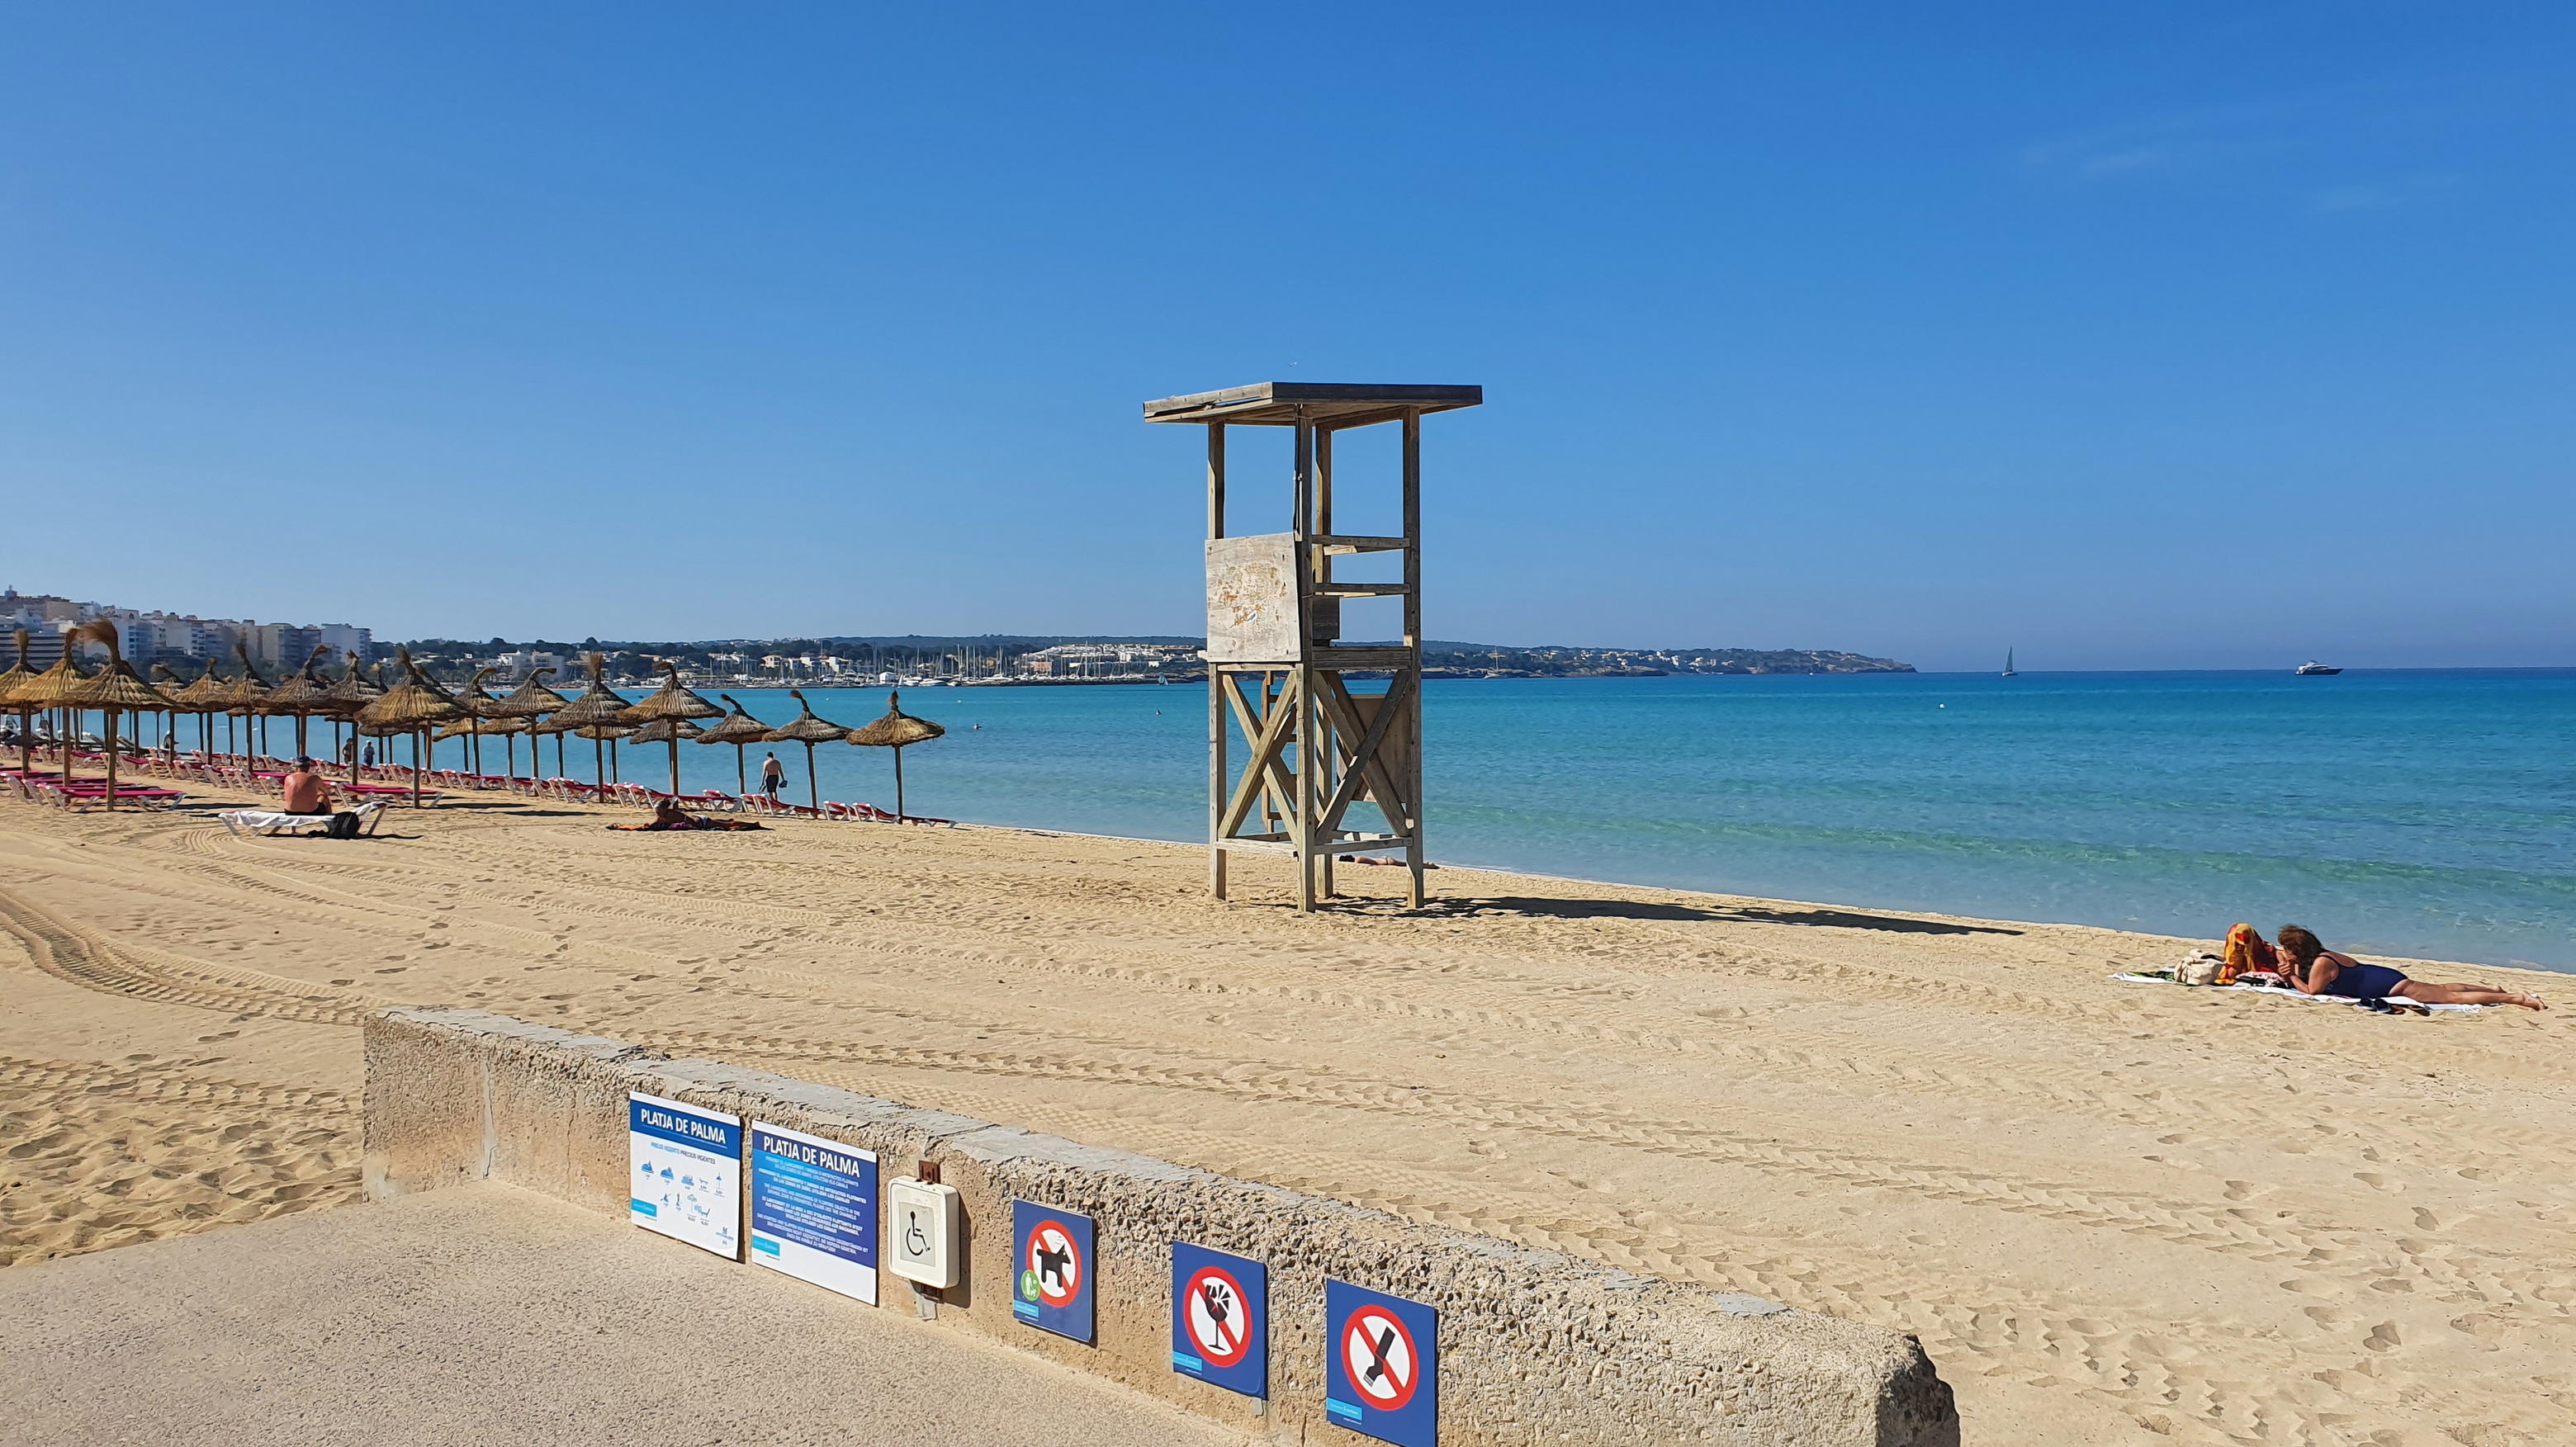 Badegäste? Fehlanzeige! Ein verwaister Rettungsturm an der Playa de Palma soll aufrütteln und für mehr Sicherheit in der Zukunft sorgen